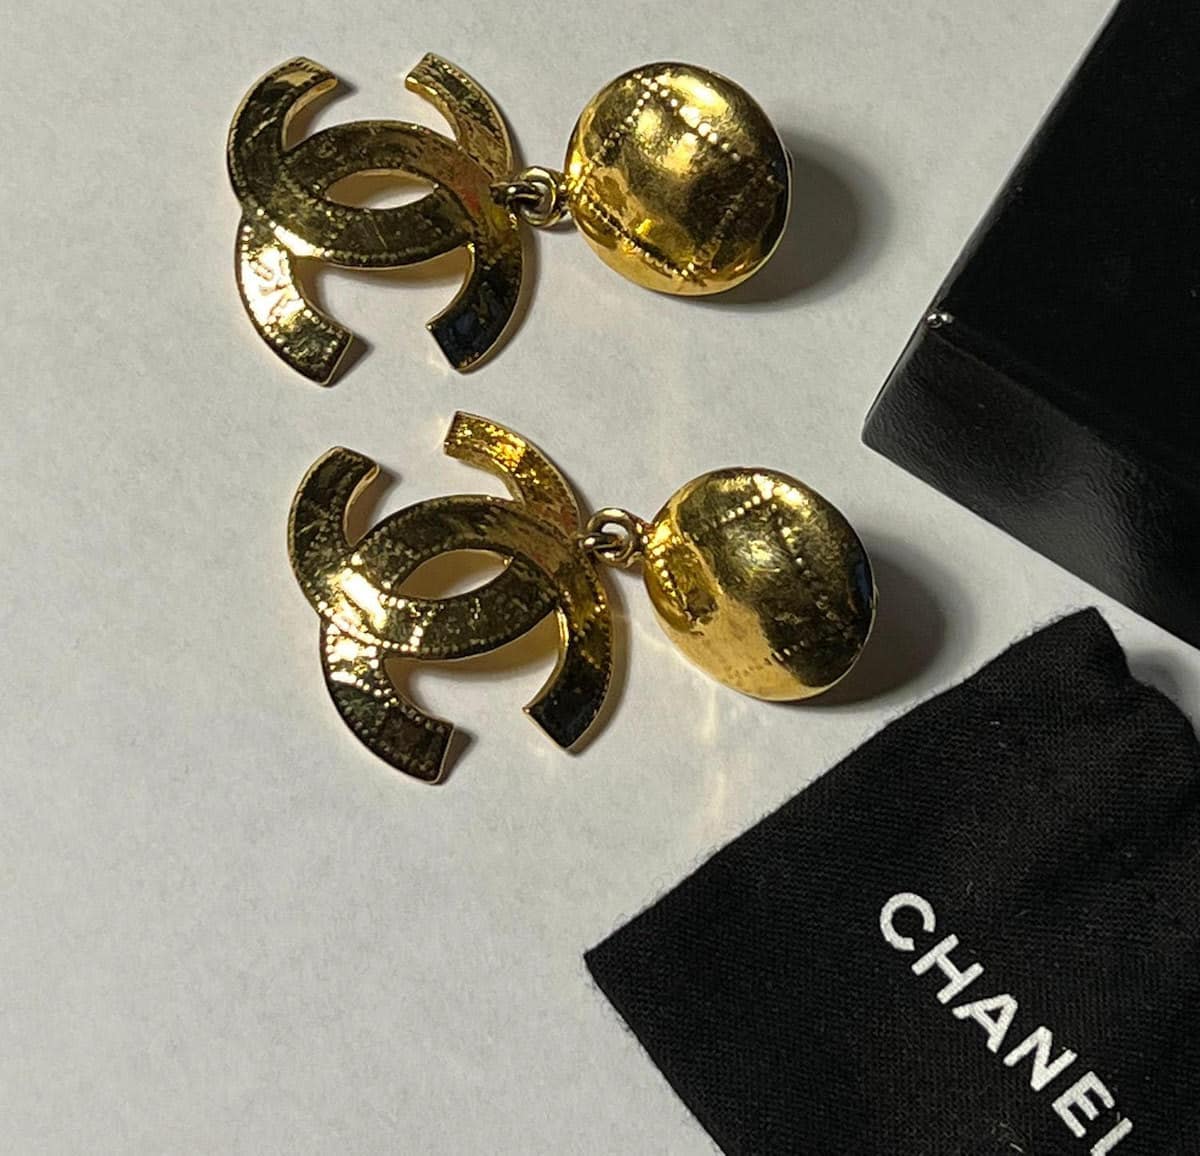 Cc earrings Chanel Gold in Metal - 29578570